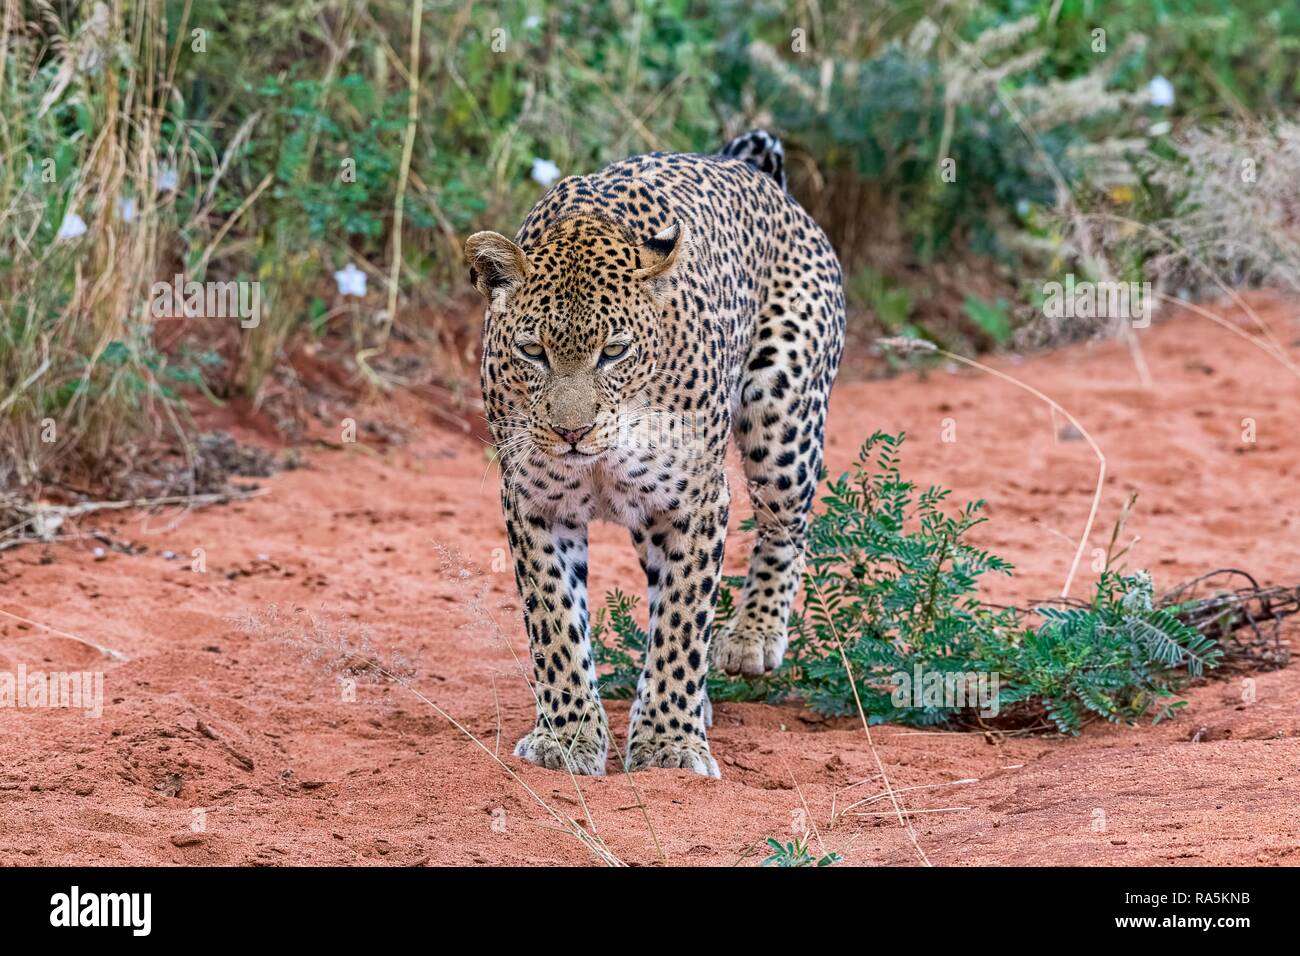 Leopard (Panthera pardus) marque le territoire, le parc national de Tsavo Ouest, au Kenya Banque D'Images